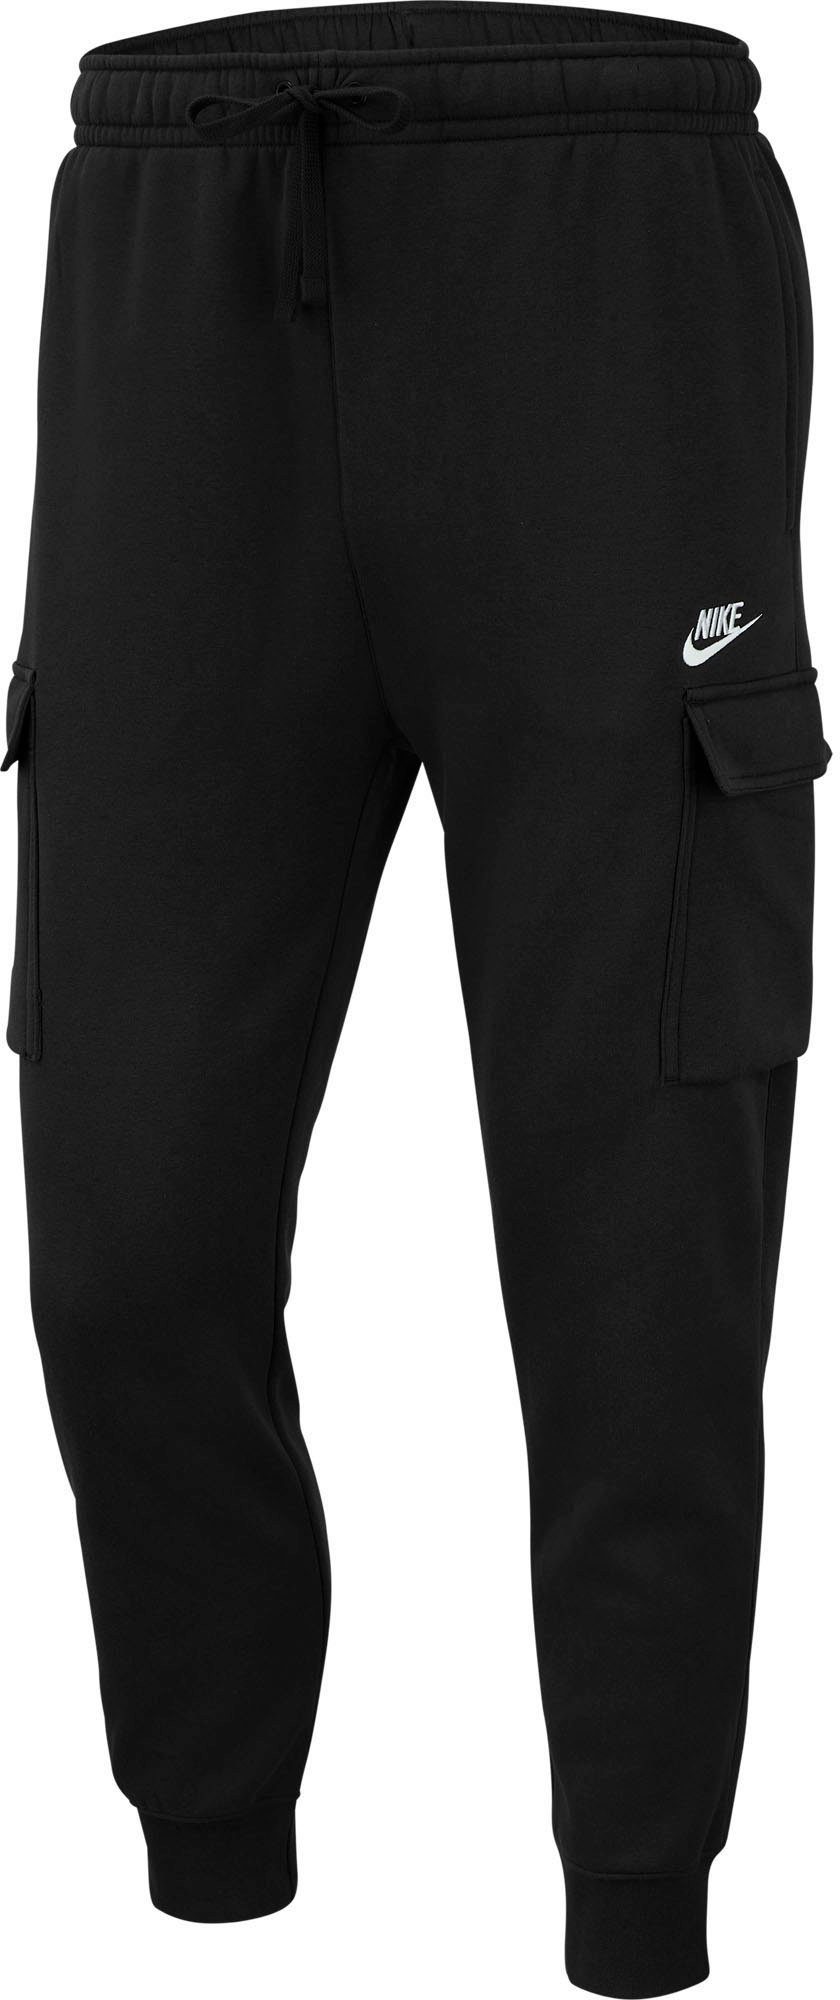 Nike Sportswear schwarz CARGO PANTS MEN'S CLUB Jogginghose FLEECE